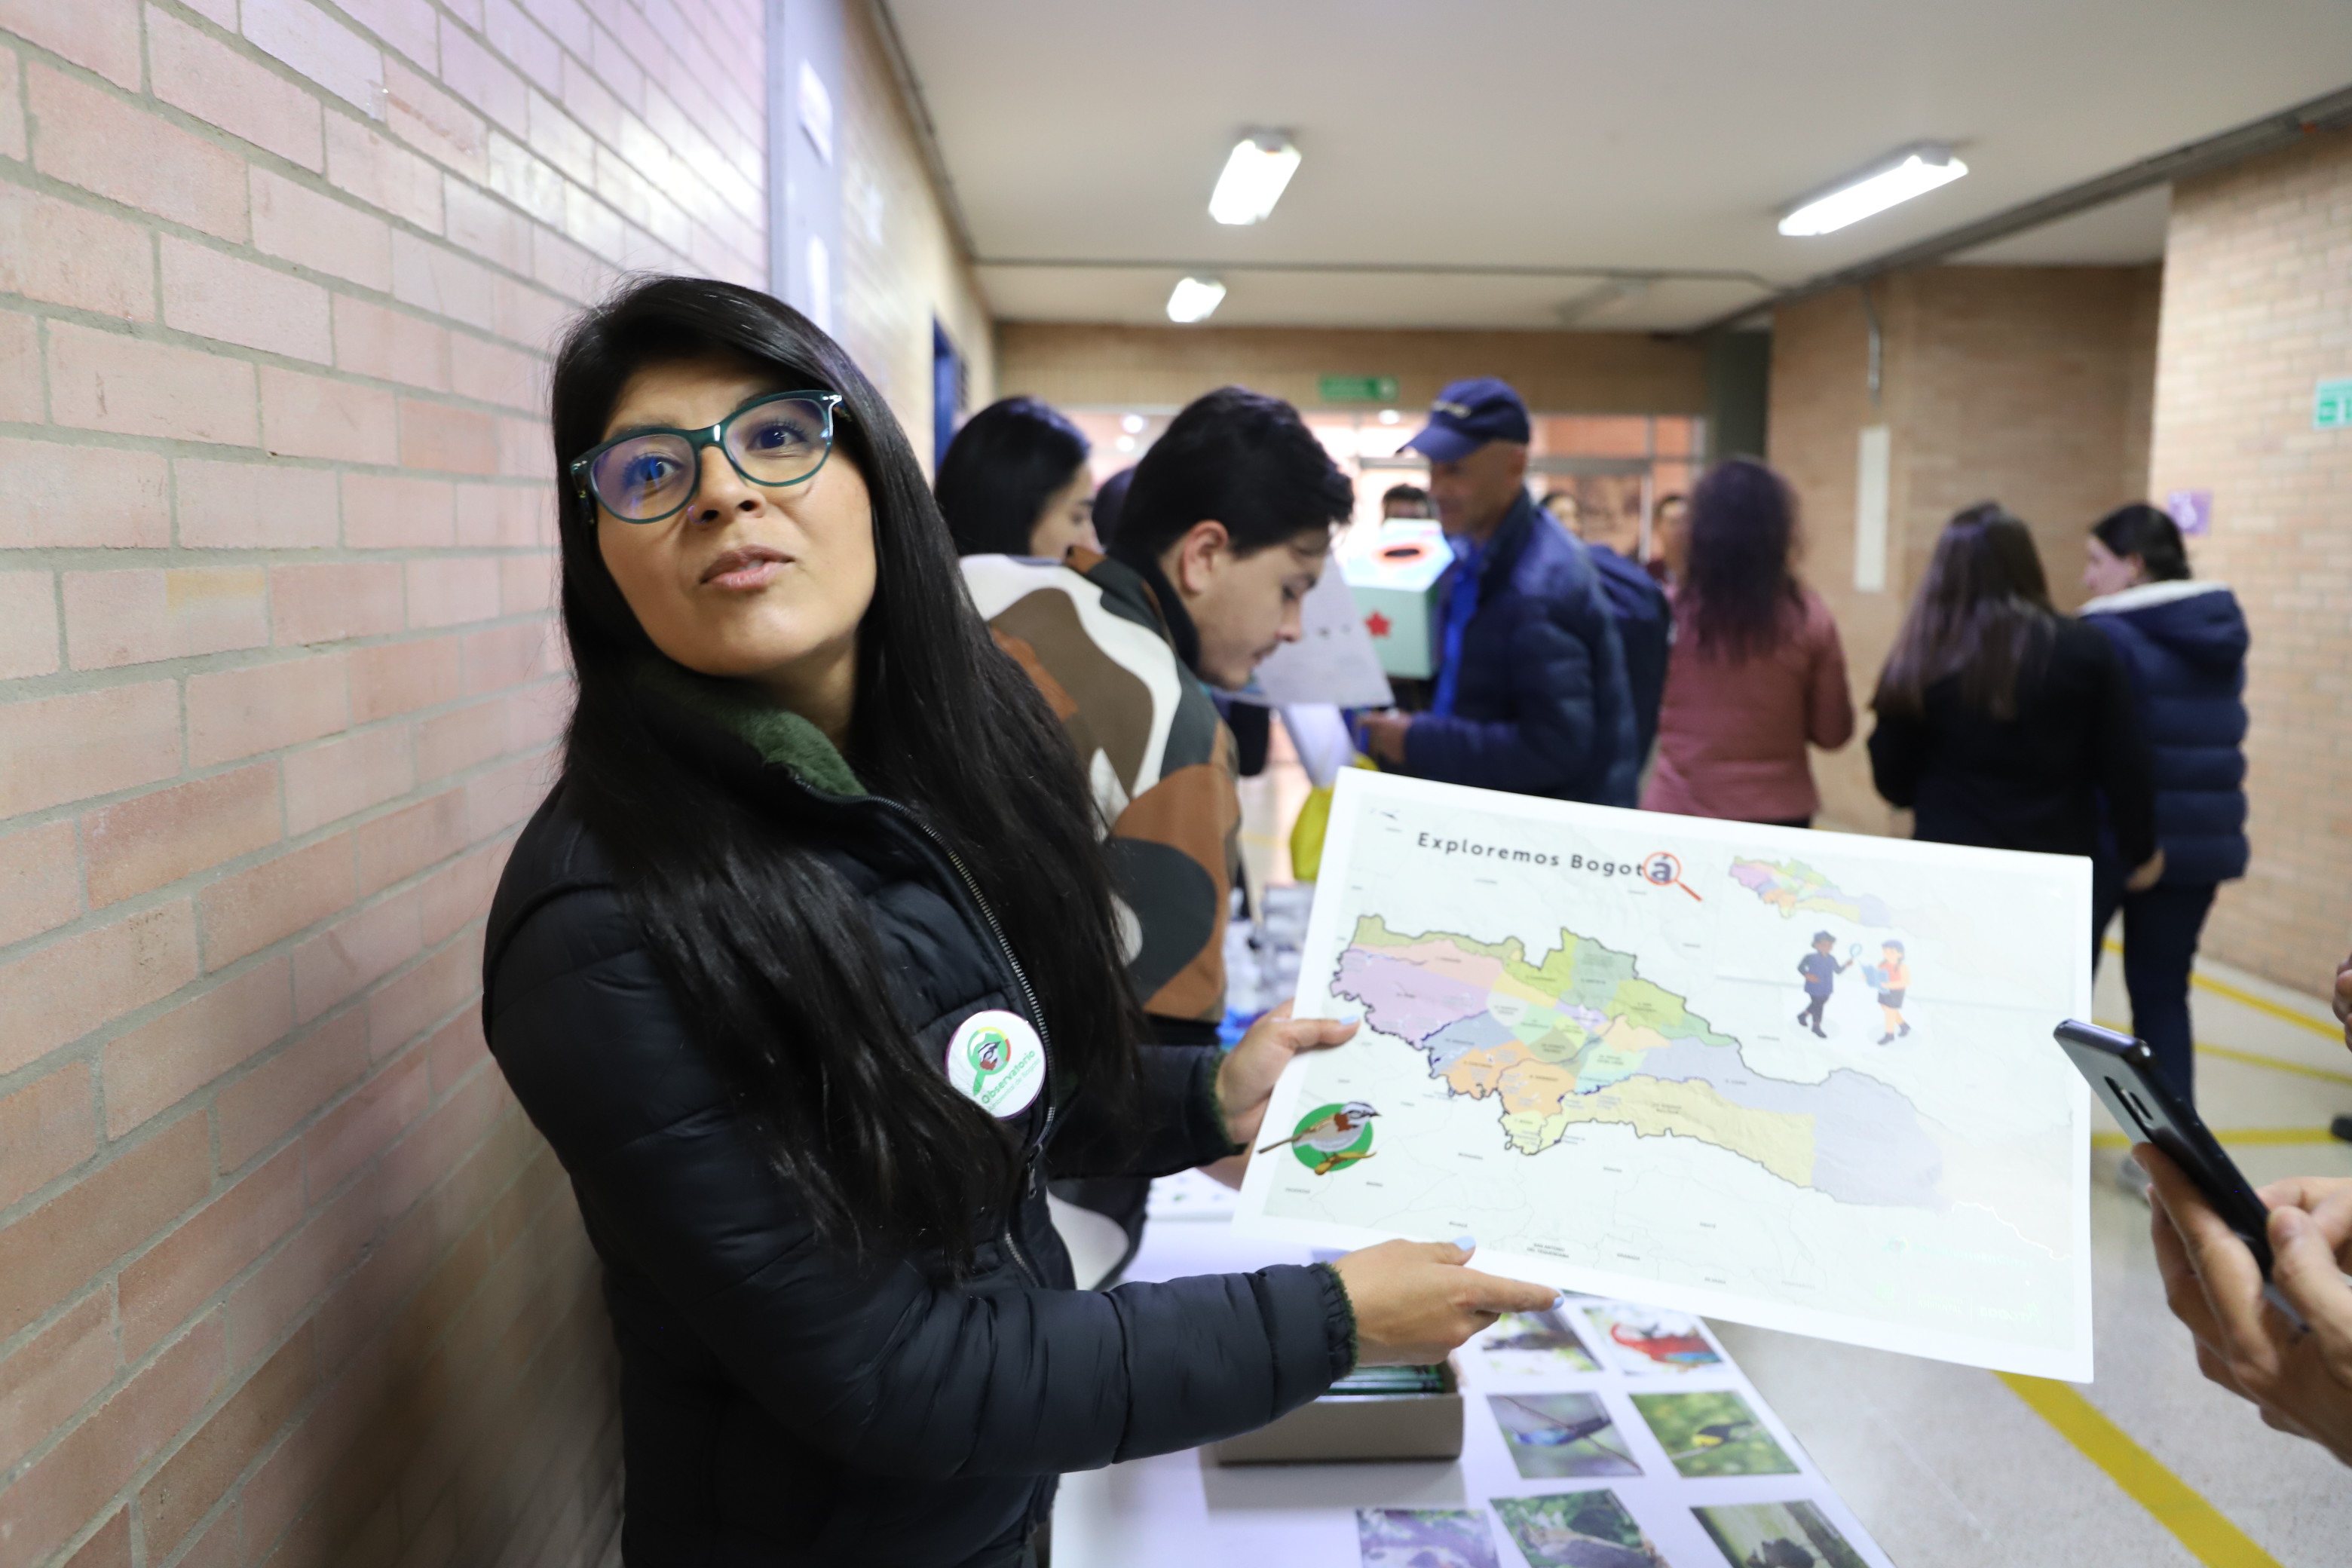 Ciudadana mostrando un mapa de Bogotá